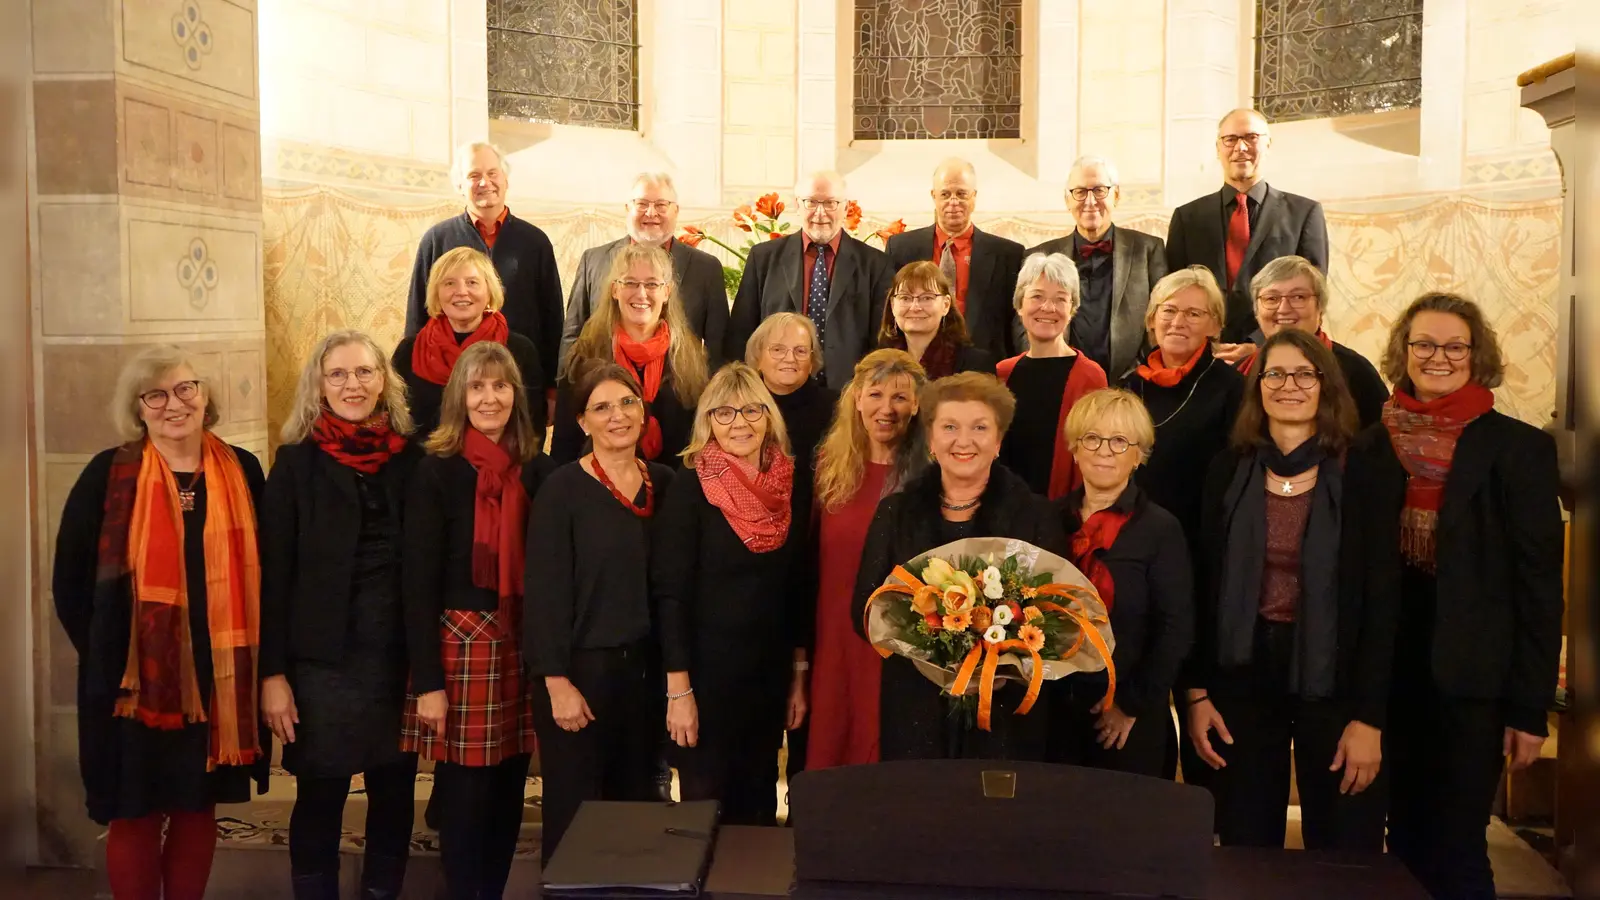 Der A-Cappella-Chor Fürstenberg sang festliche Lieder in der Christuskirche. (Foto: privat)